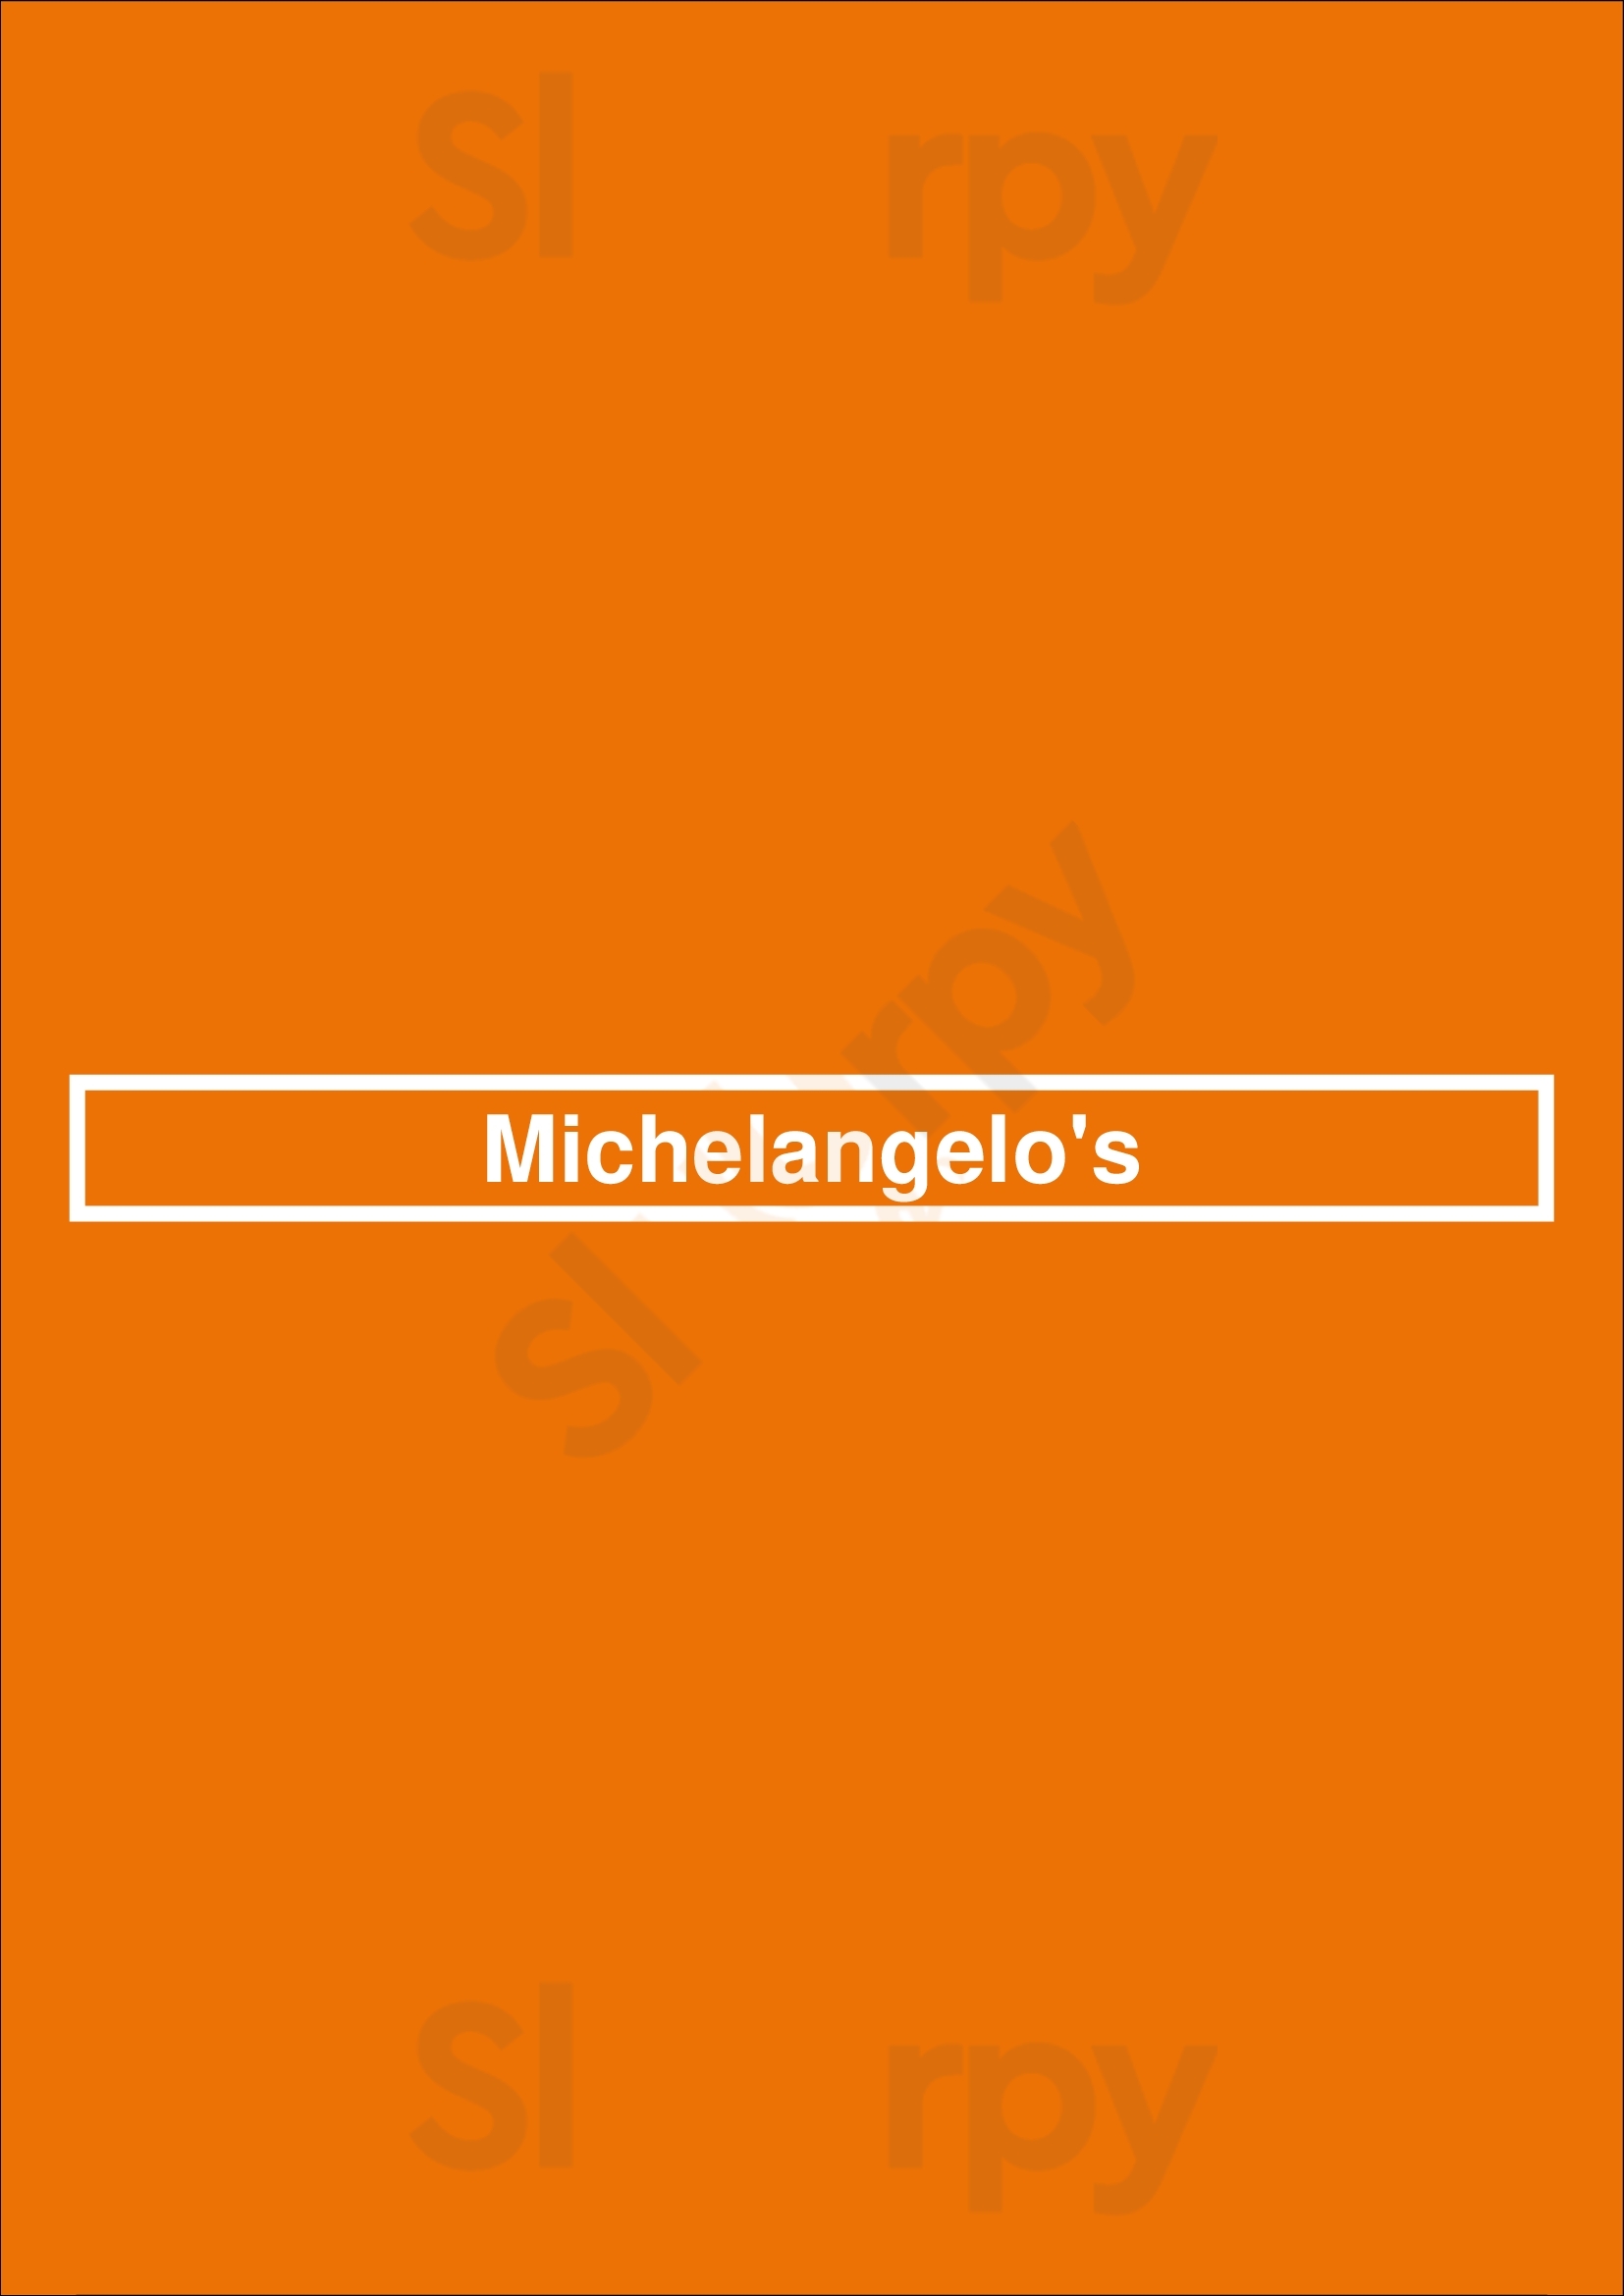 Michelangelo's Baltimore Menu - 1